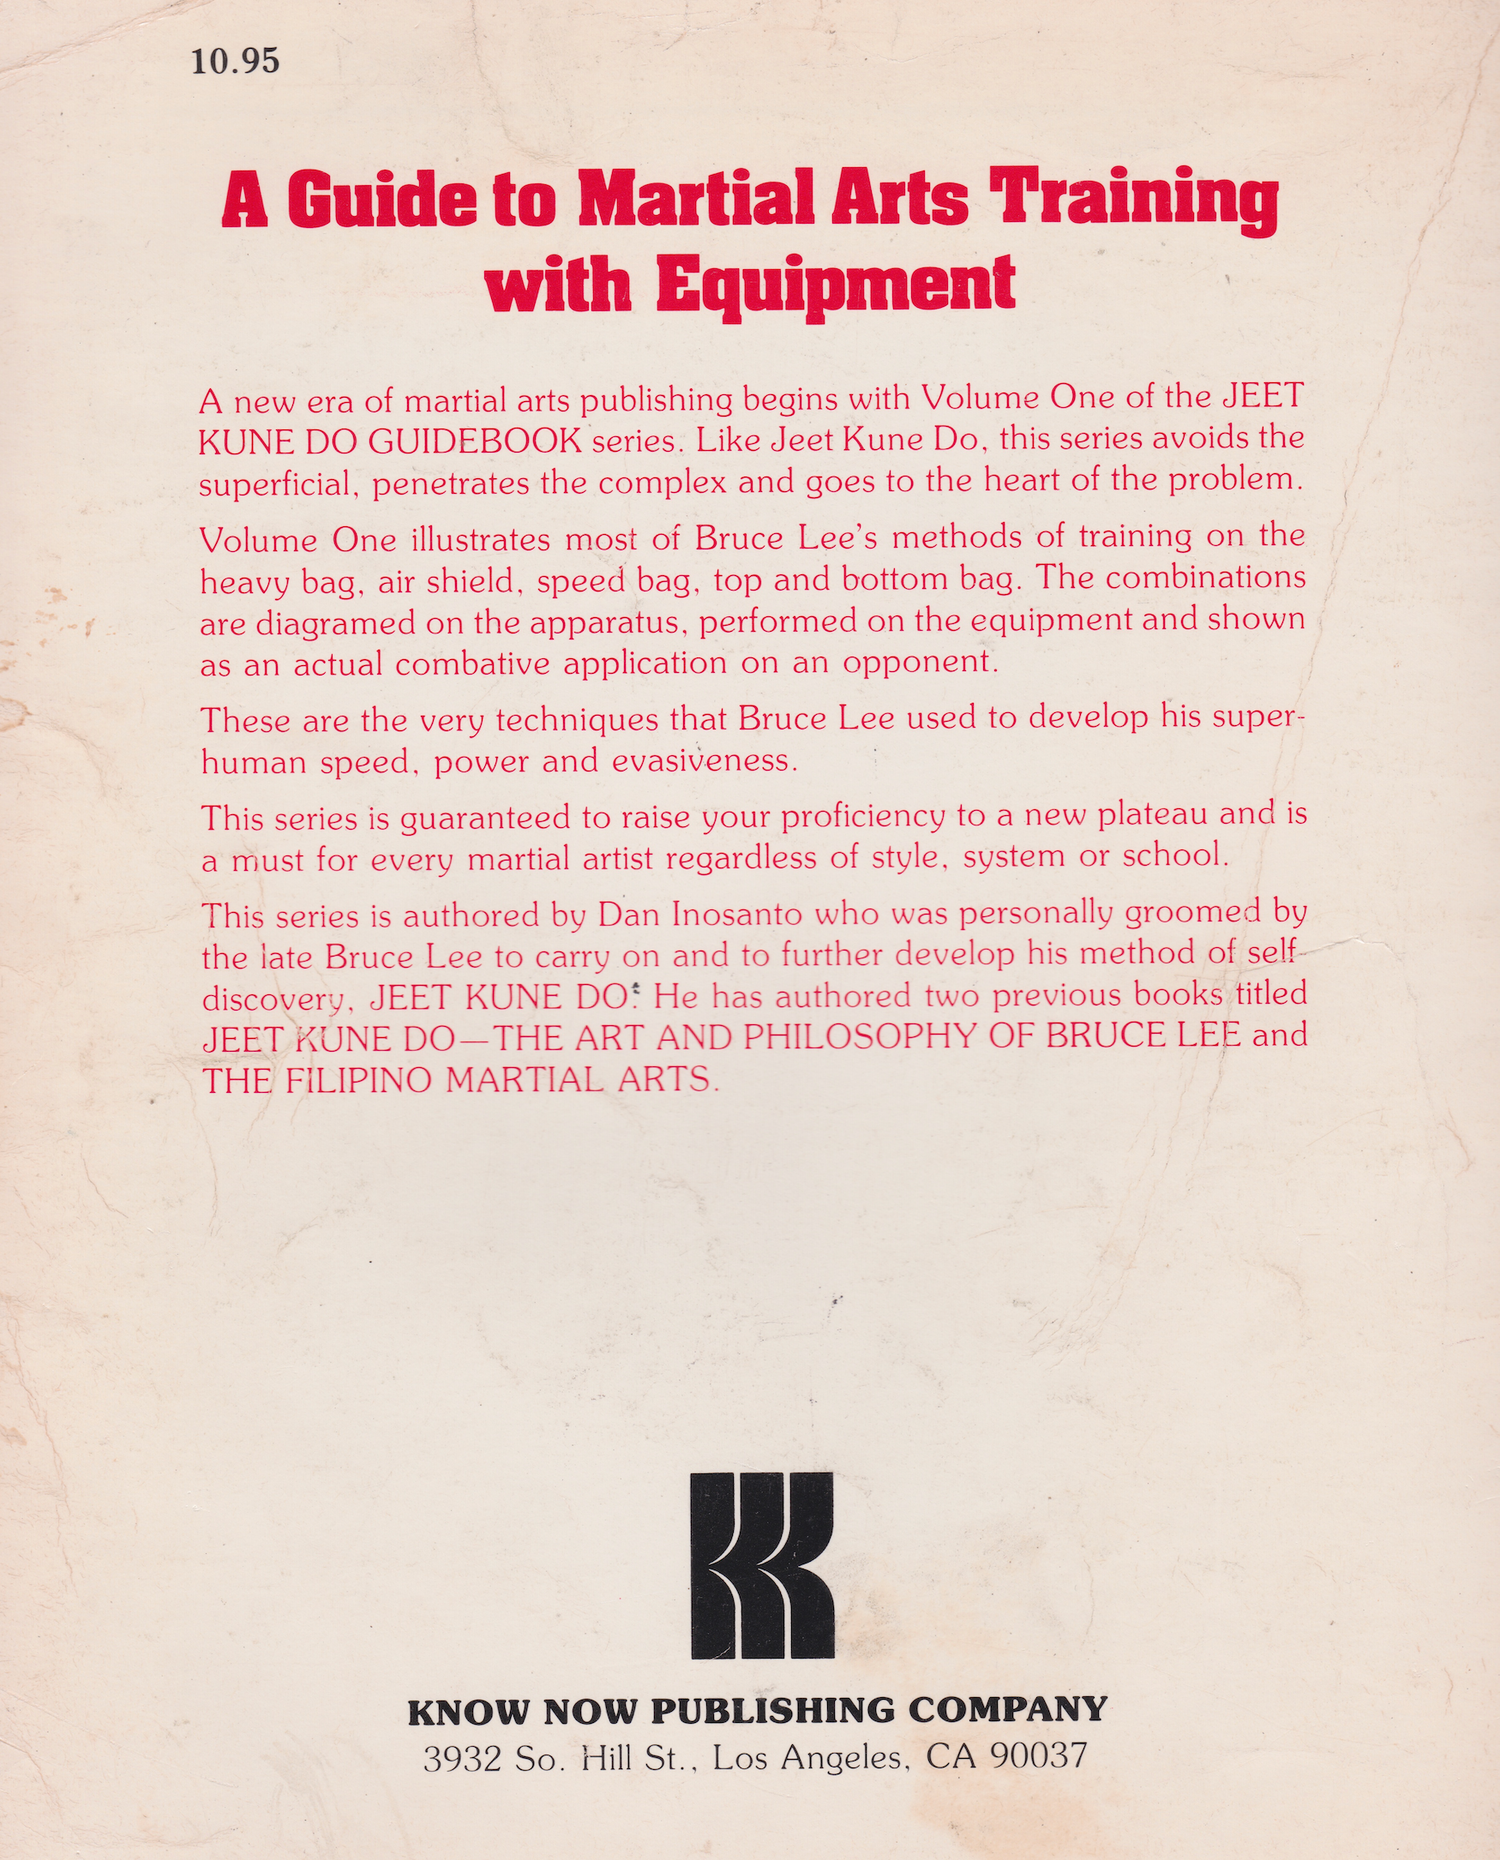 ジークンドー ガイドブック 1: 器具を使った武術トレーニングのガイド ダン イノサント著 (中古) 